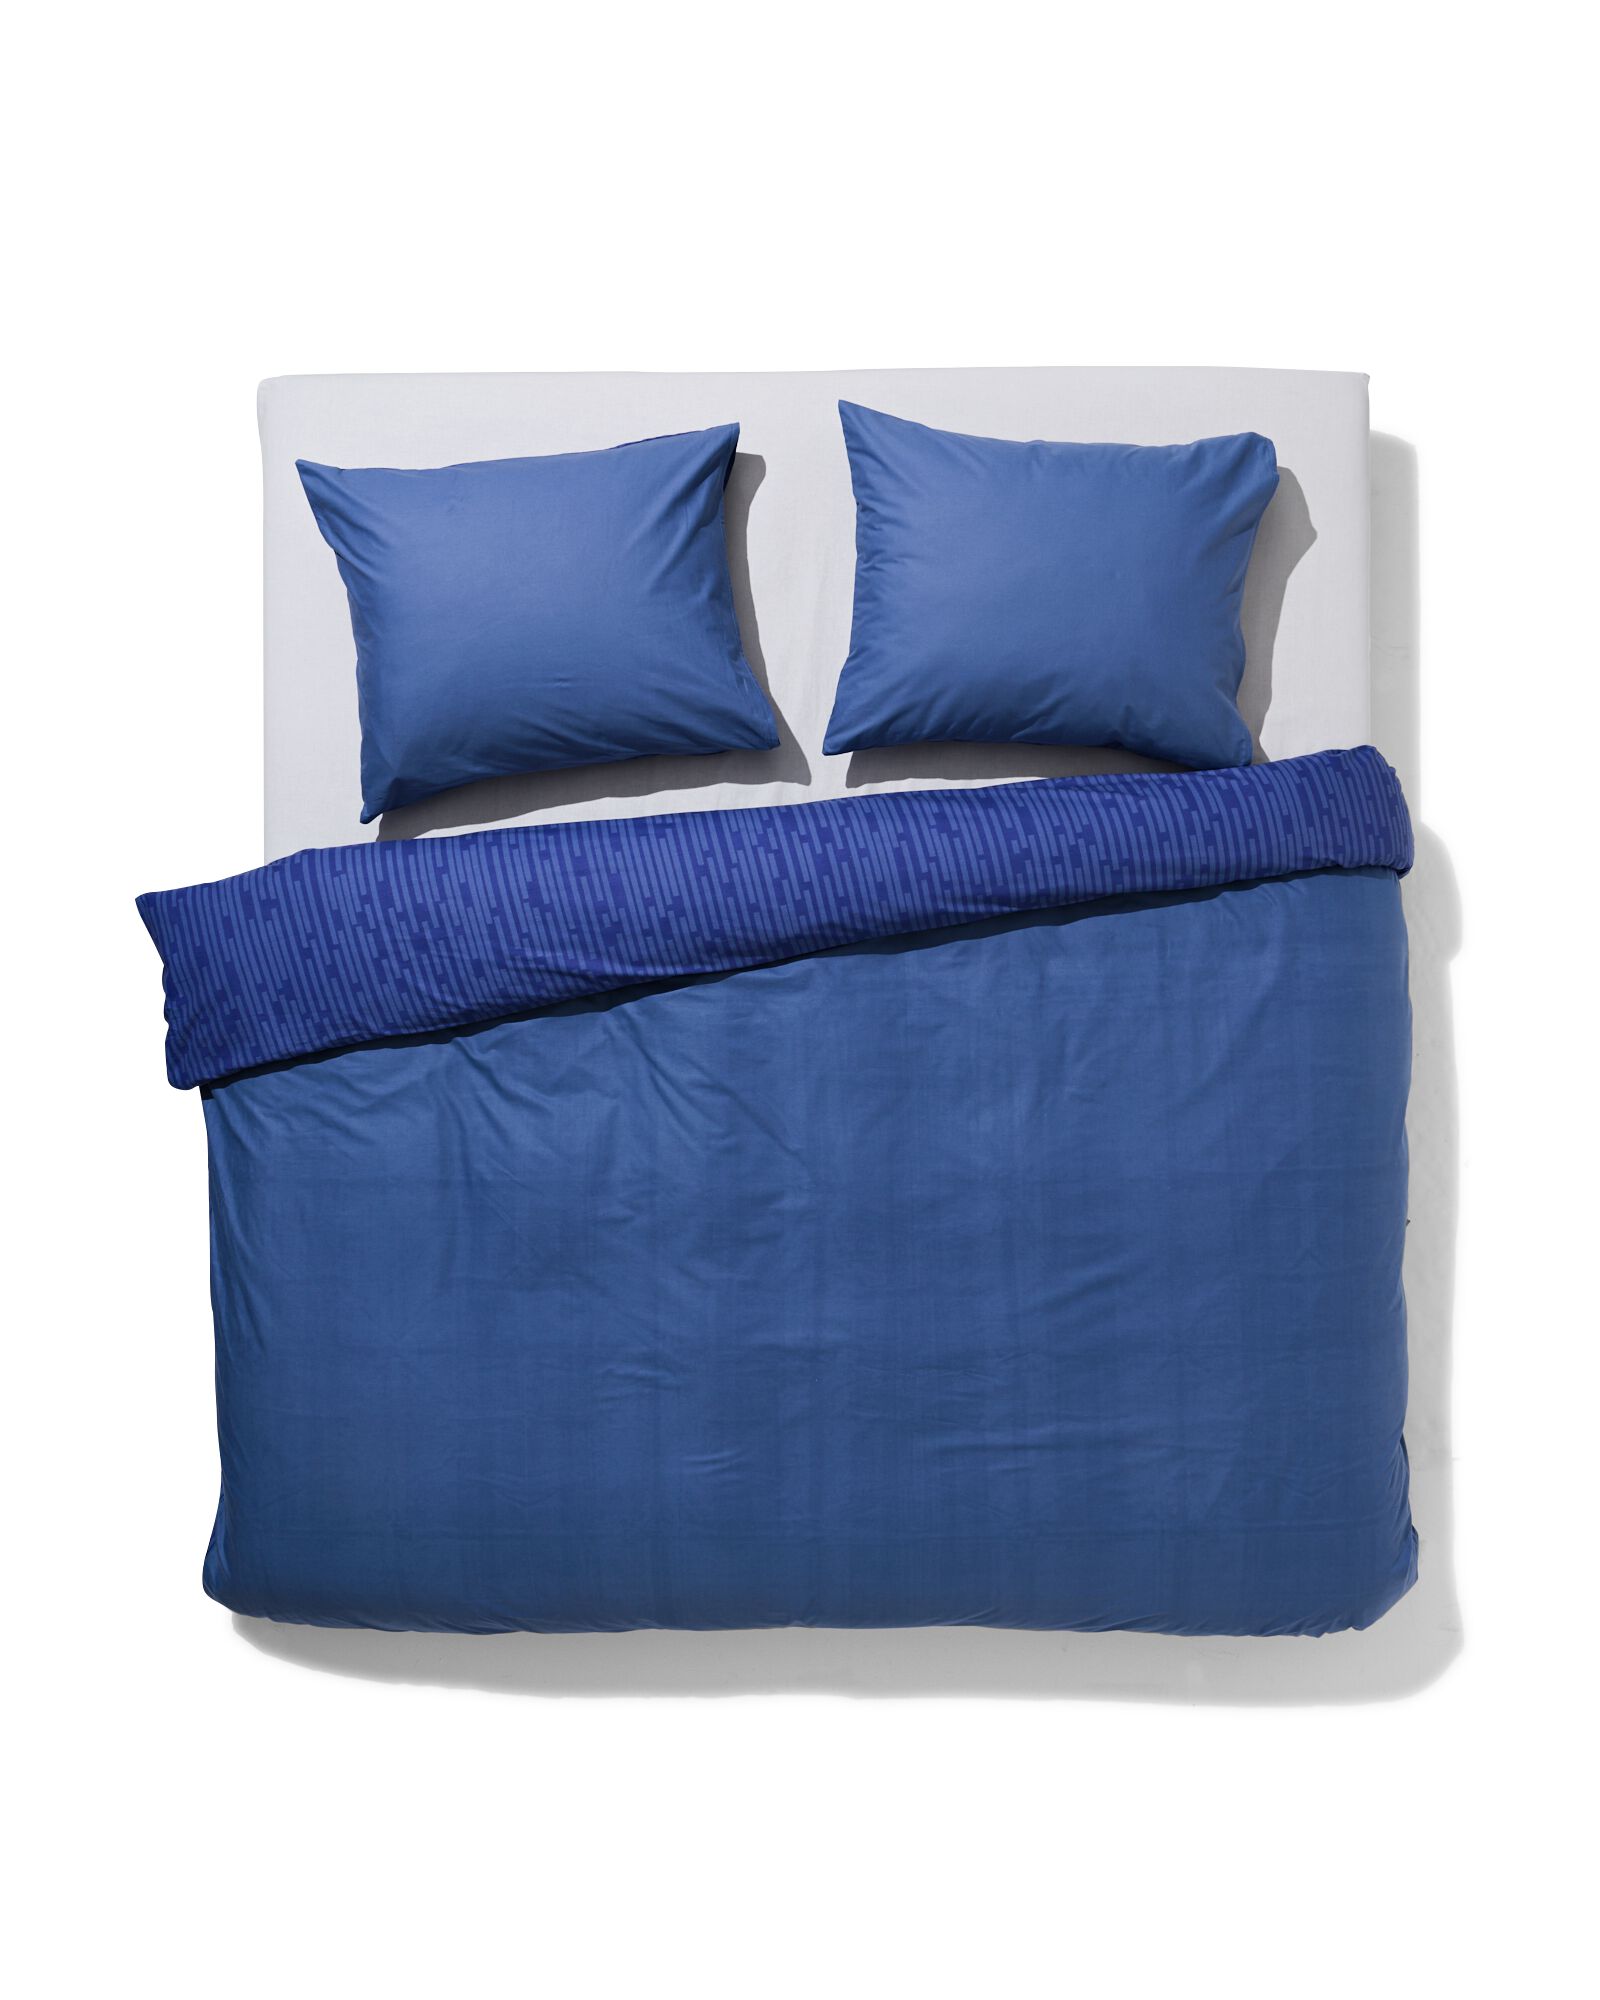 Bettwäsche, Soft Cotton, 200 x 220 cm, Streifen, blau - 5730189 - HEMA